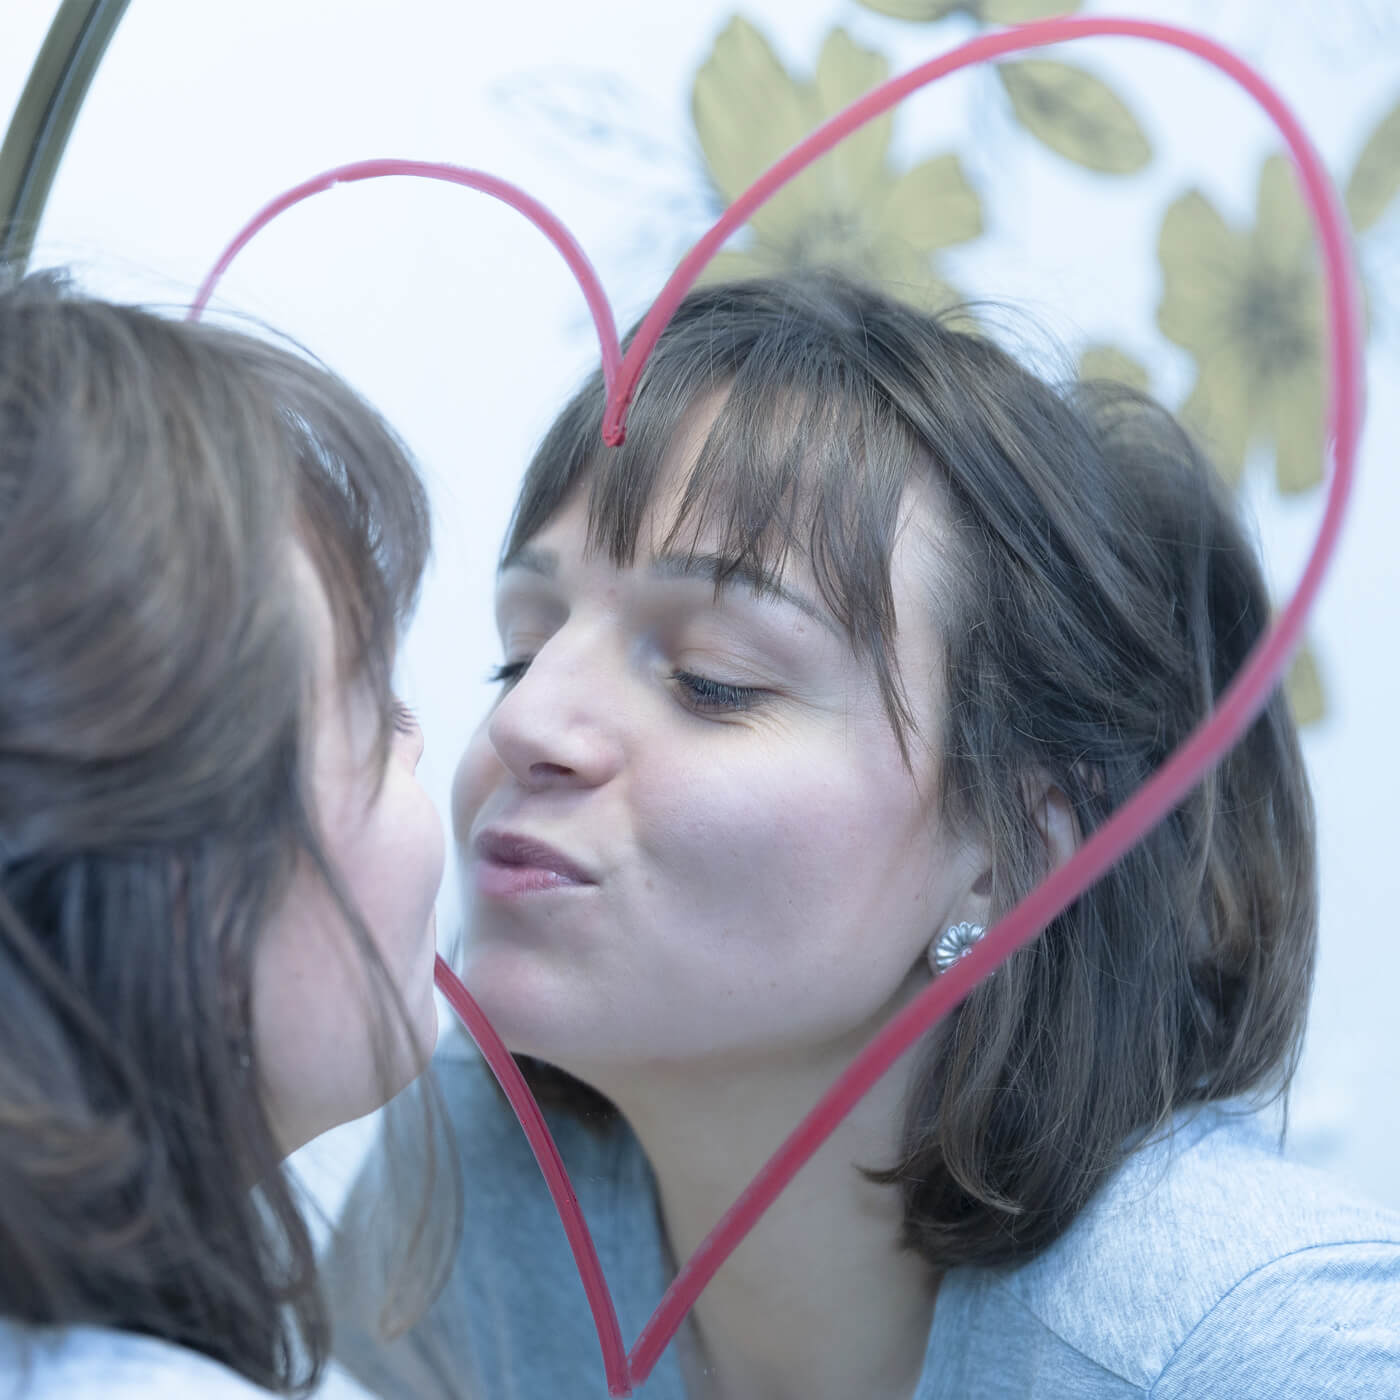 femme embrasse miroir avec un coeur sur le miroir